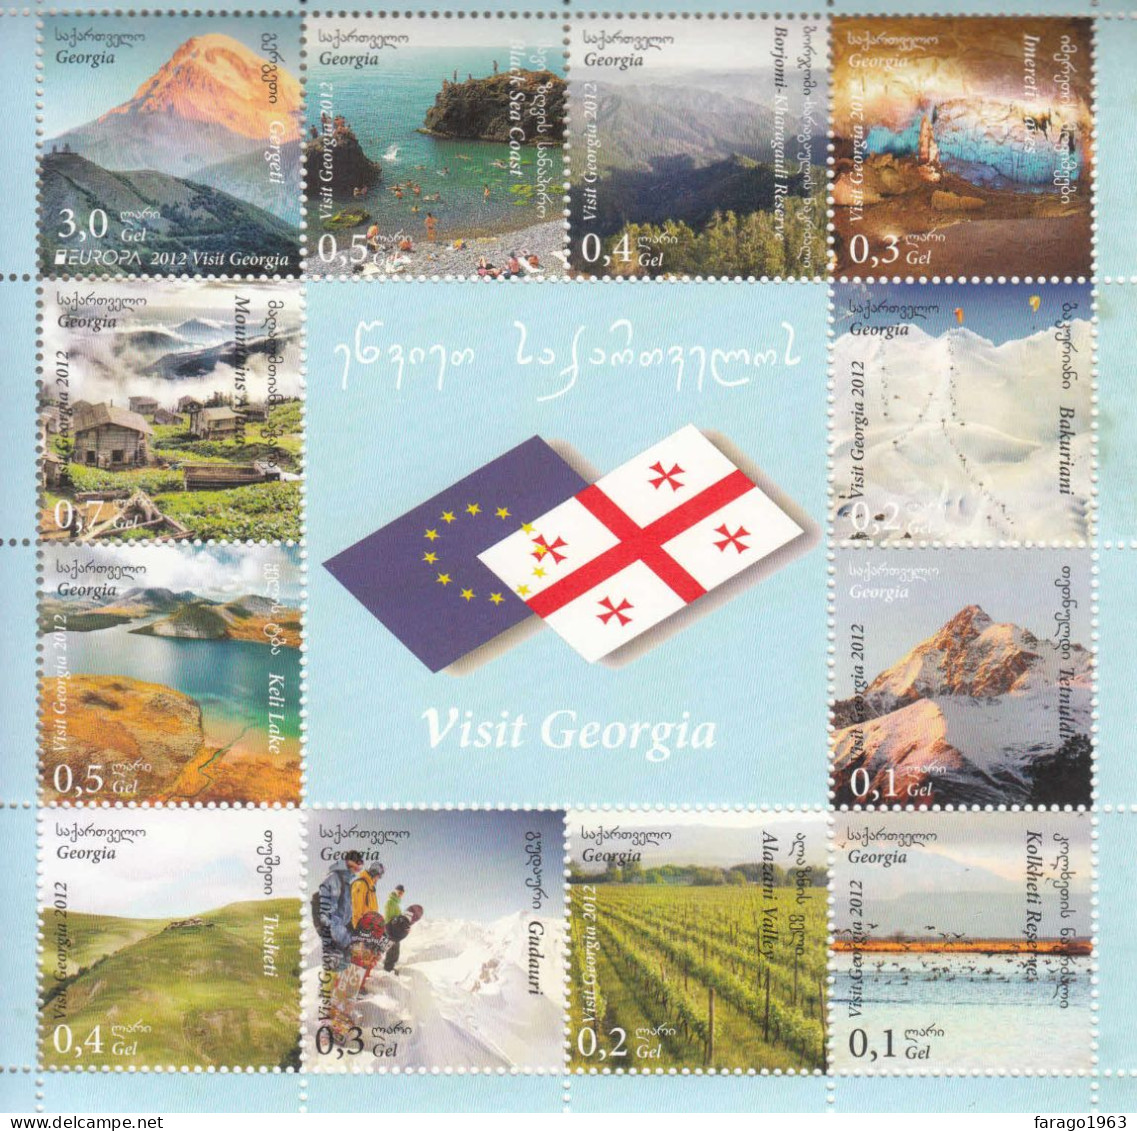 2012 Georgia Visit Georgia Tourism Mountains Wine Skiing Caves Miniature Sheet Of 12 MNH - Georgia